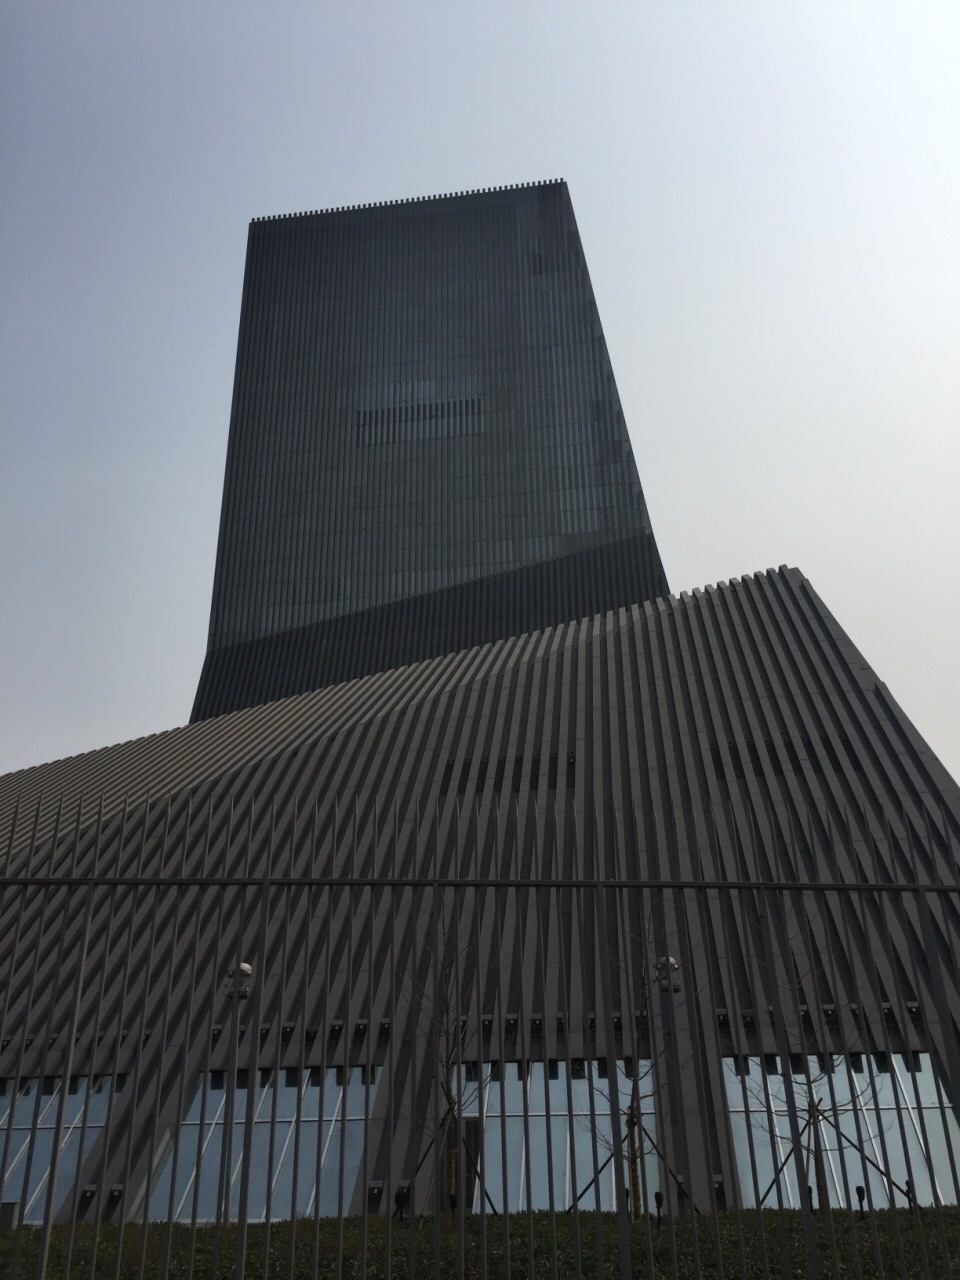 2022央视总部大楼游玩攻略,怪异的建筑,在强调稳定的年